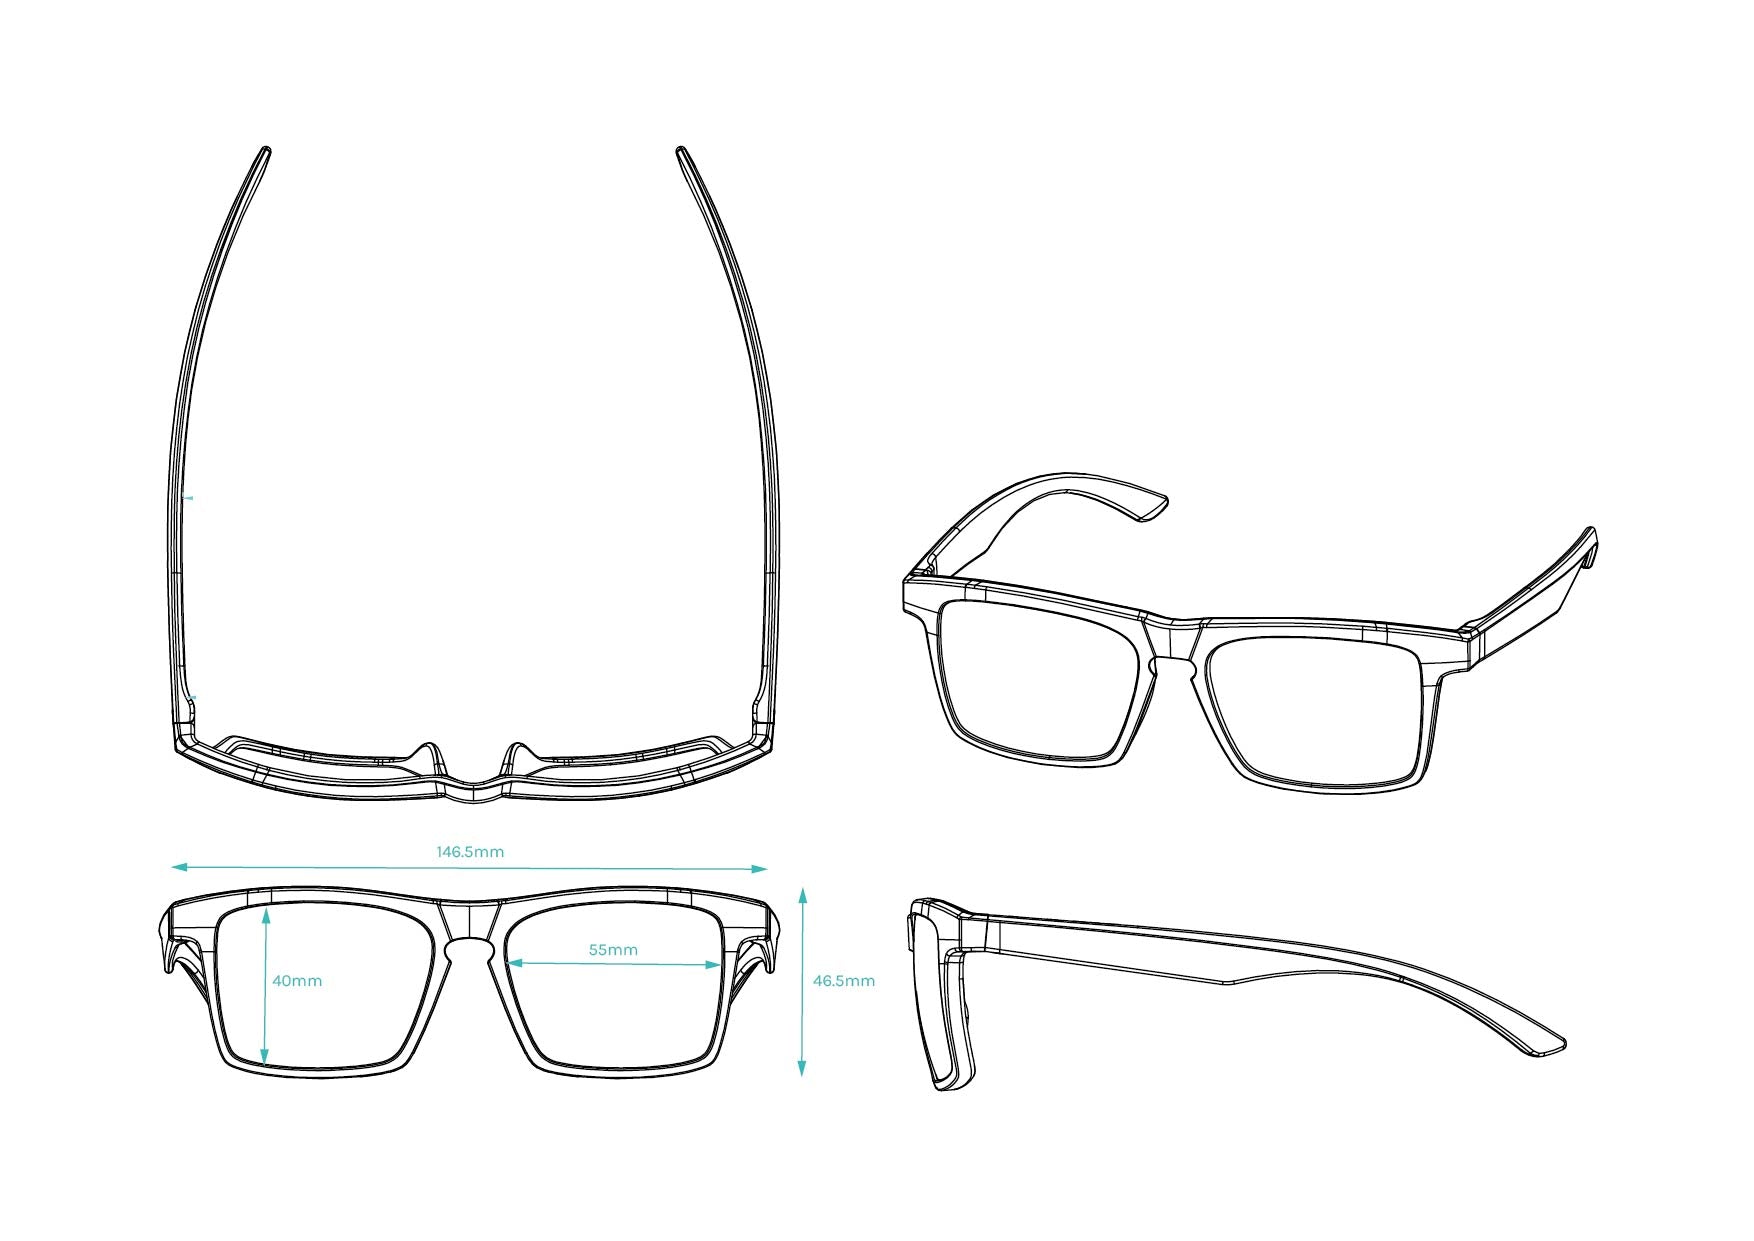 A.P.E. Optics Claro Sunglasses (Matte Snow w/ Smoke Lens)